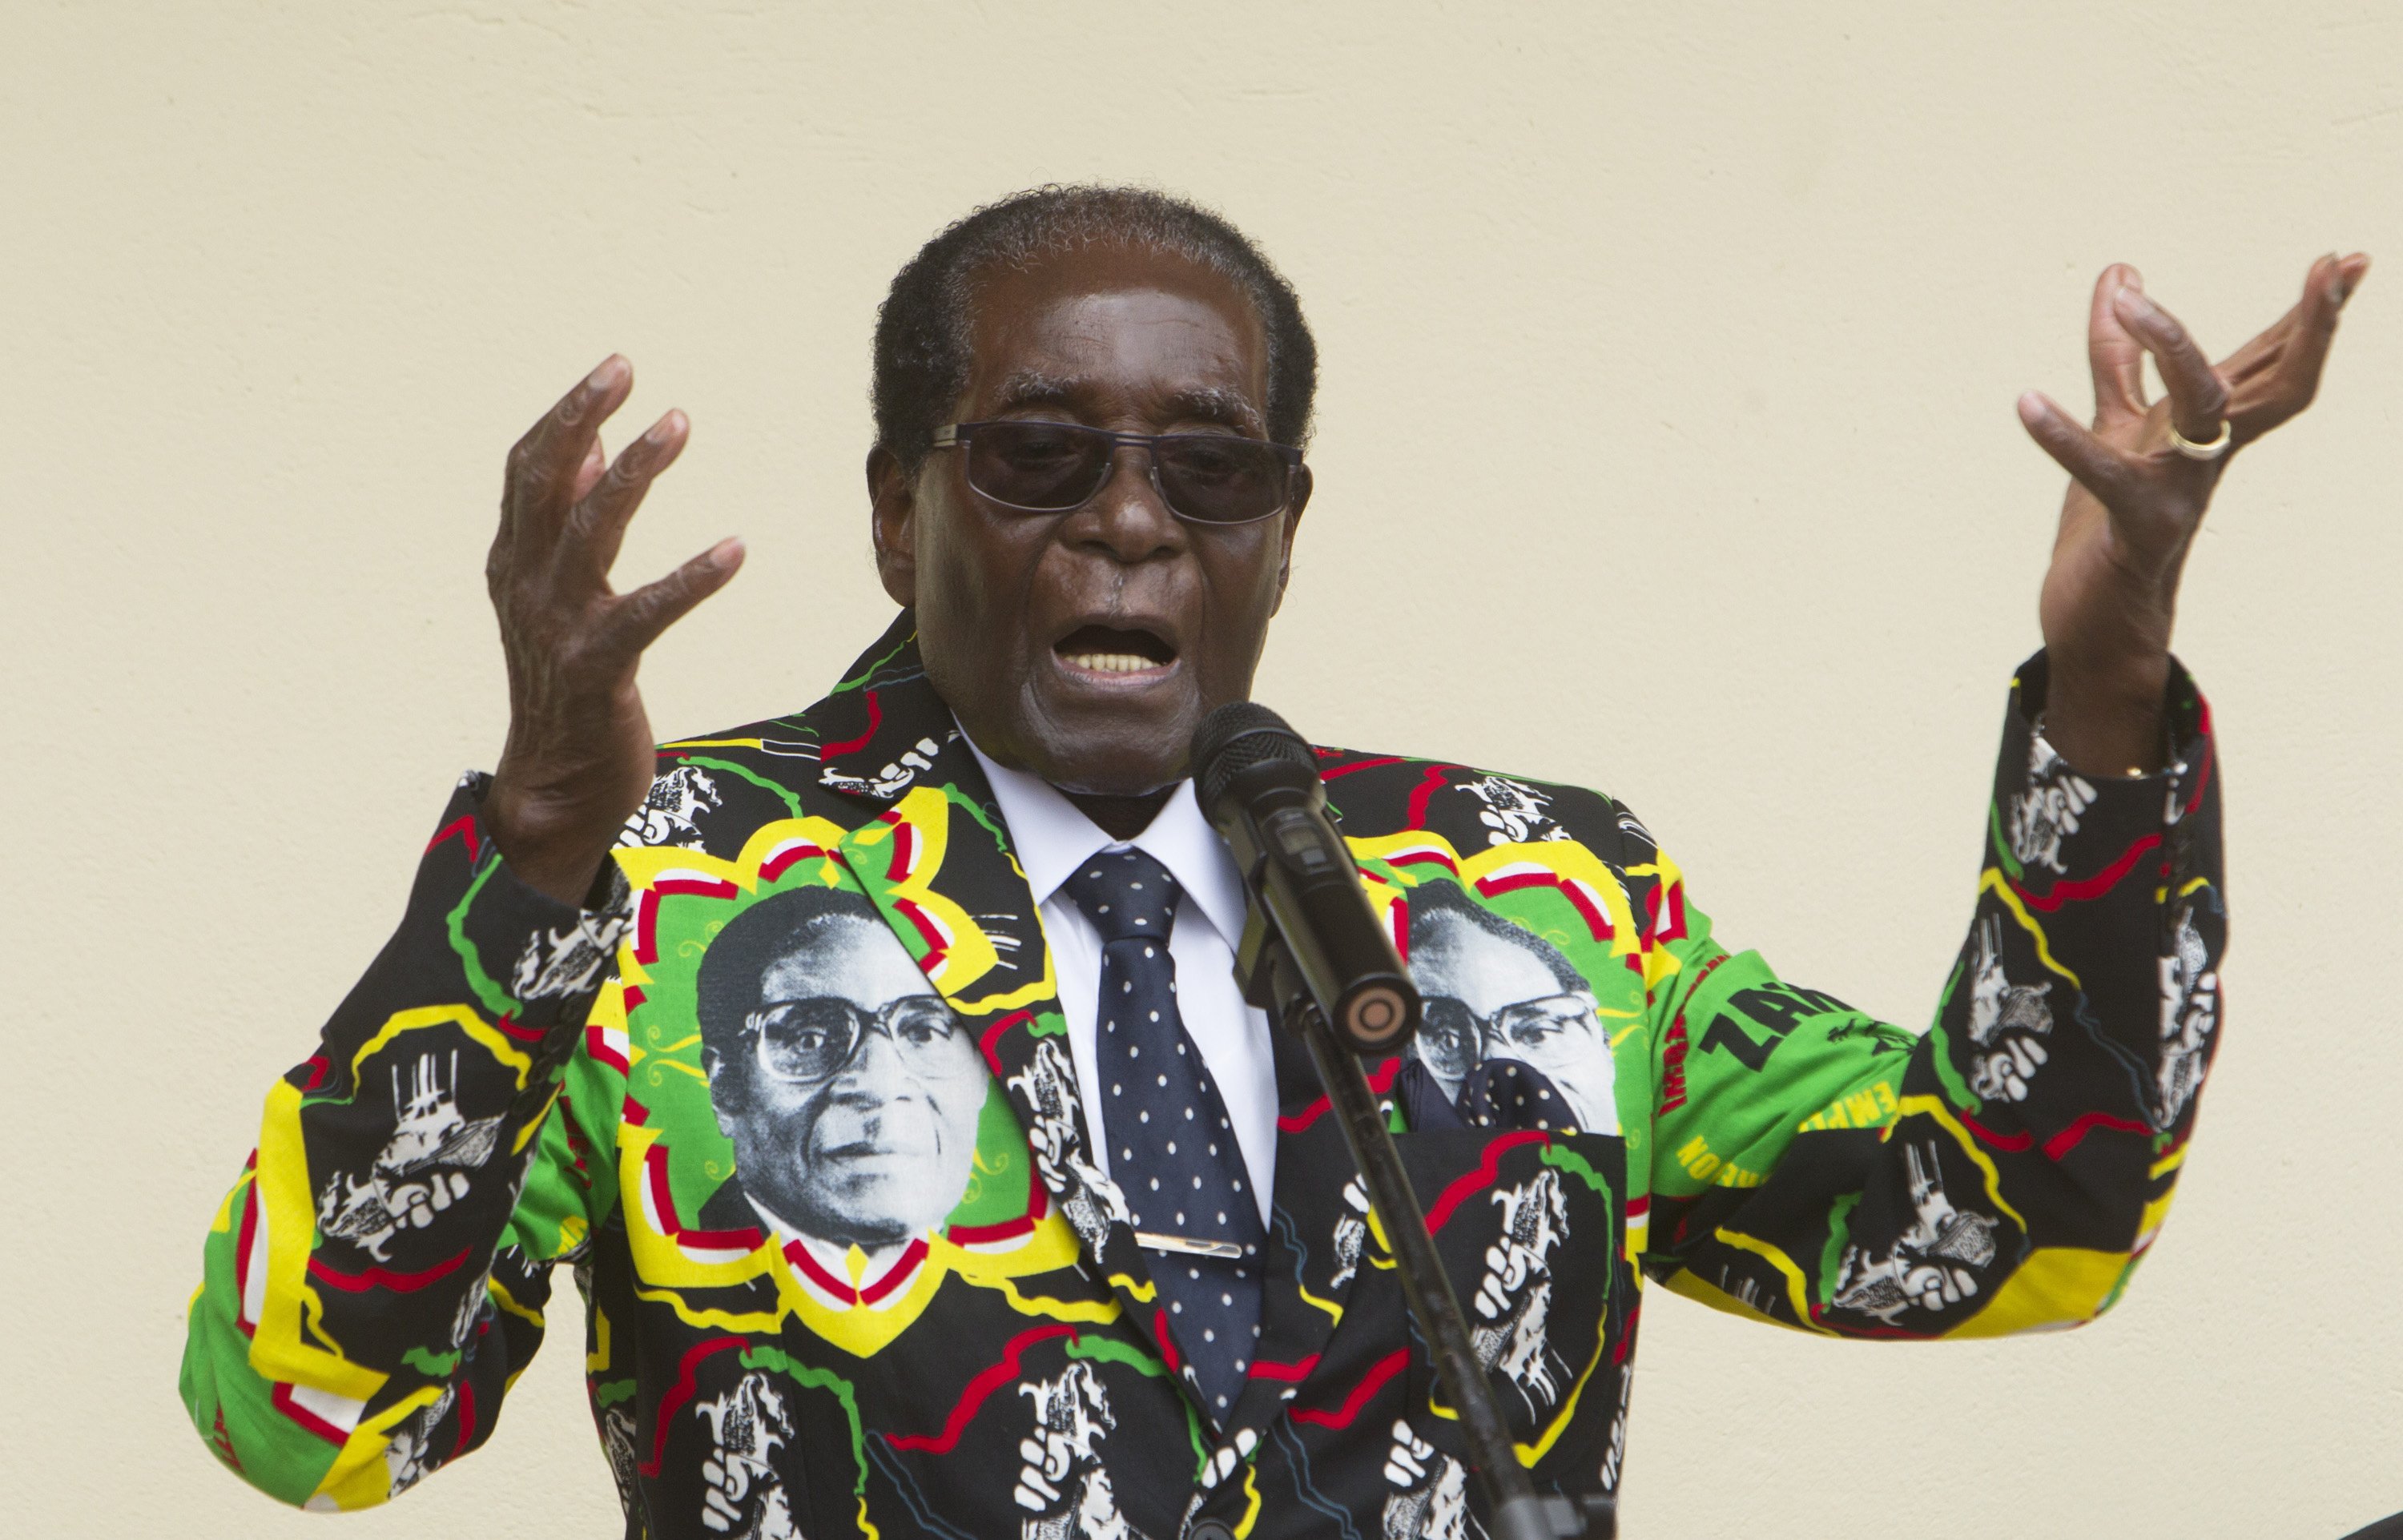 Óriási a felháborodás, mert az ENSZ jószolgálati nagykövete lett Robert Mugabe